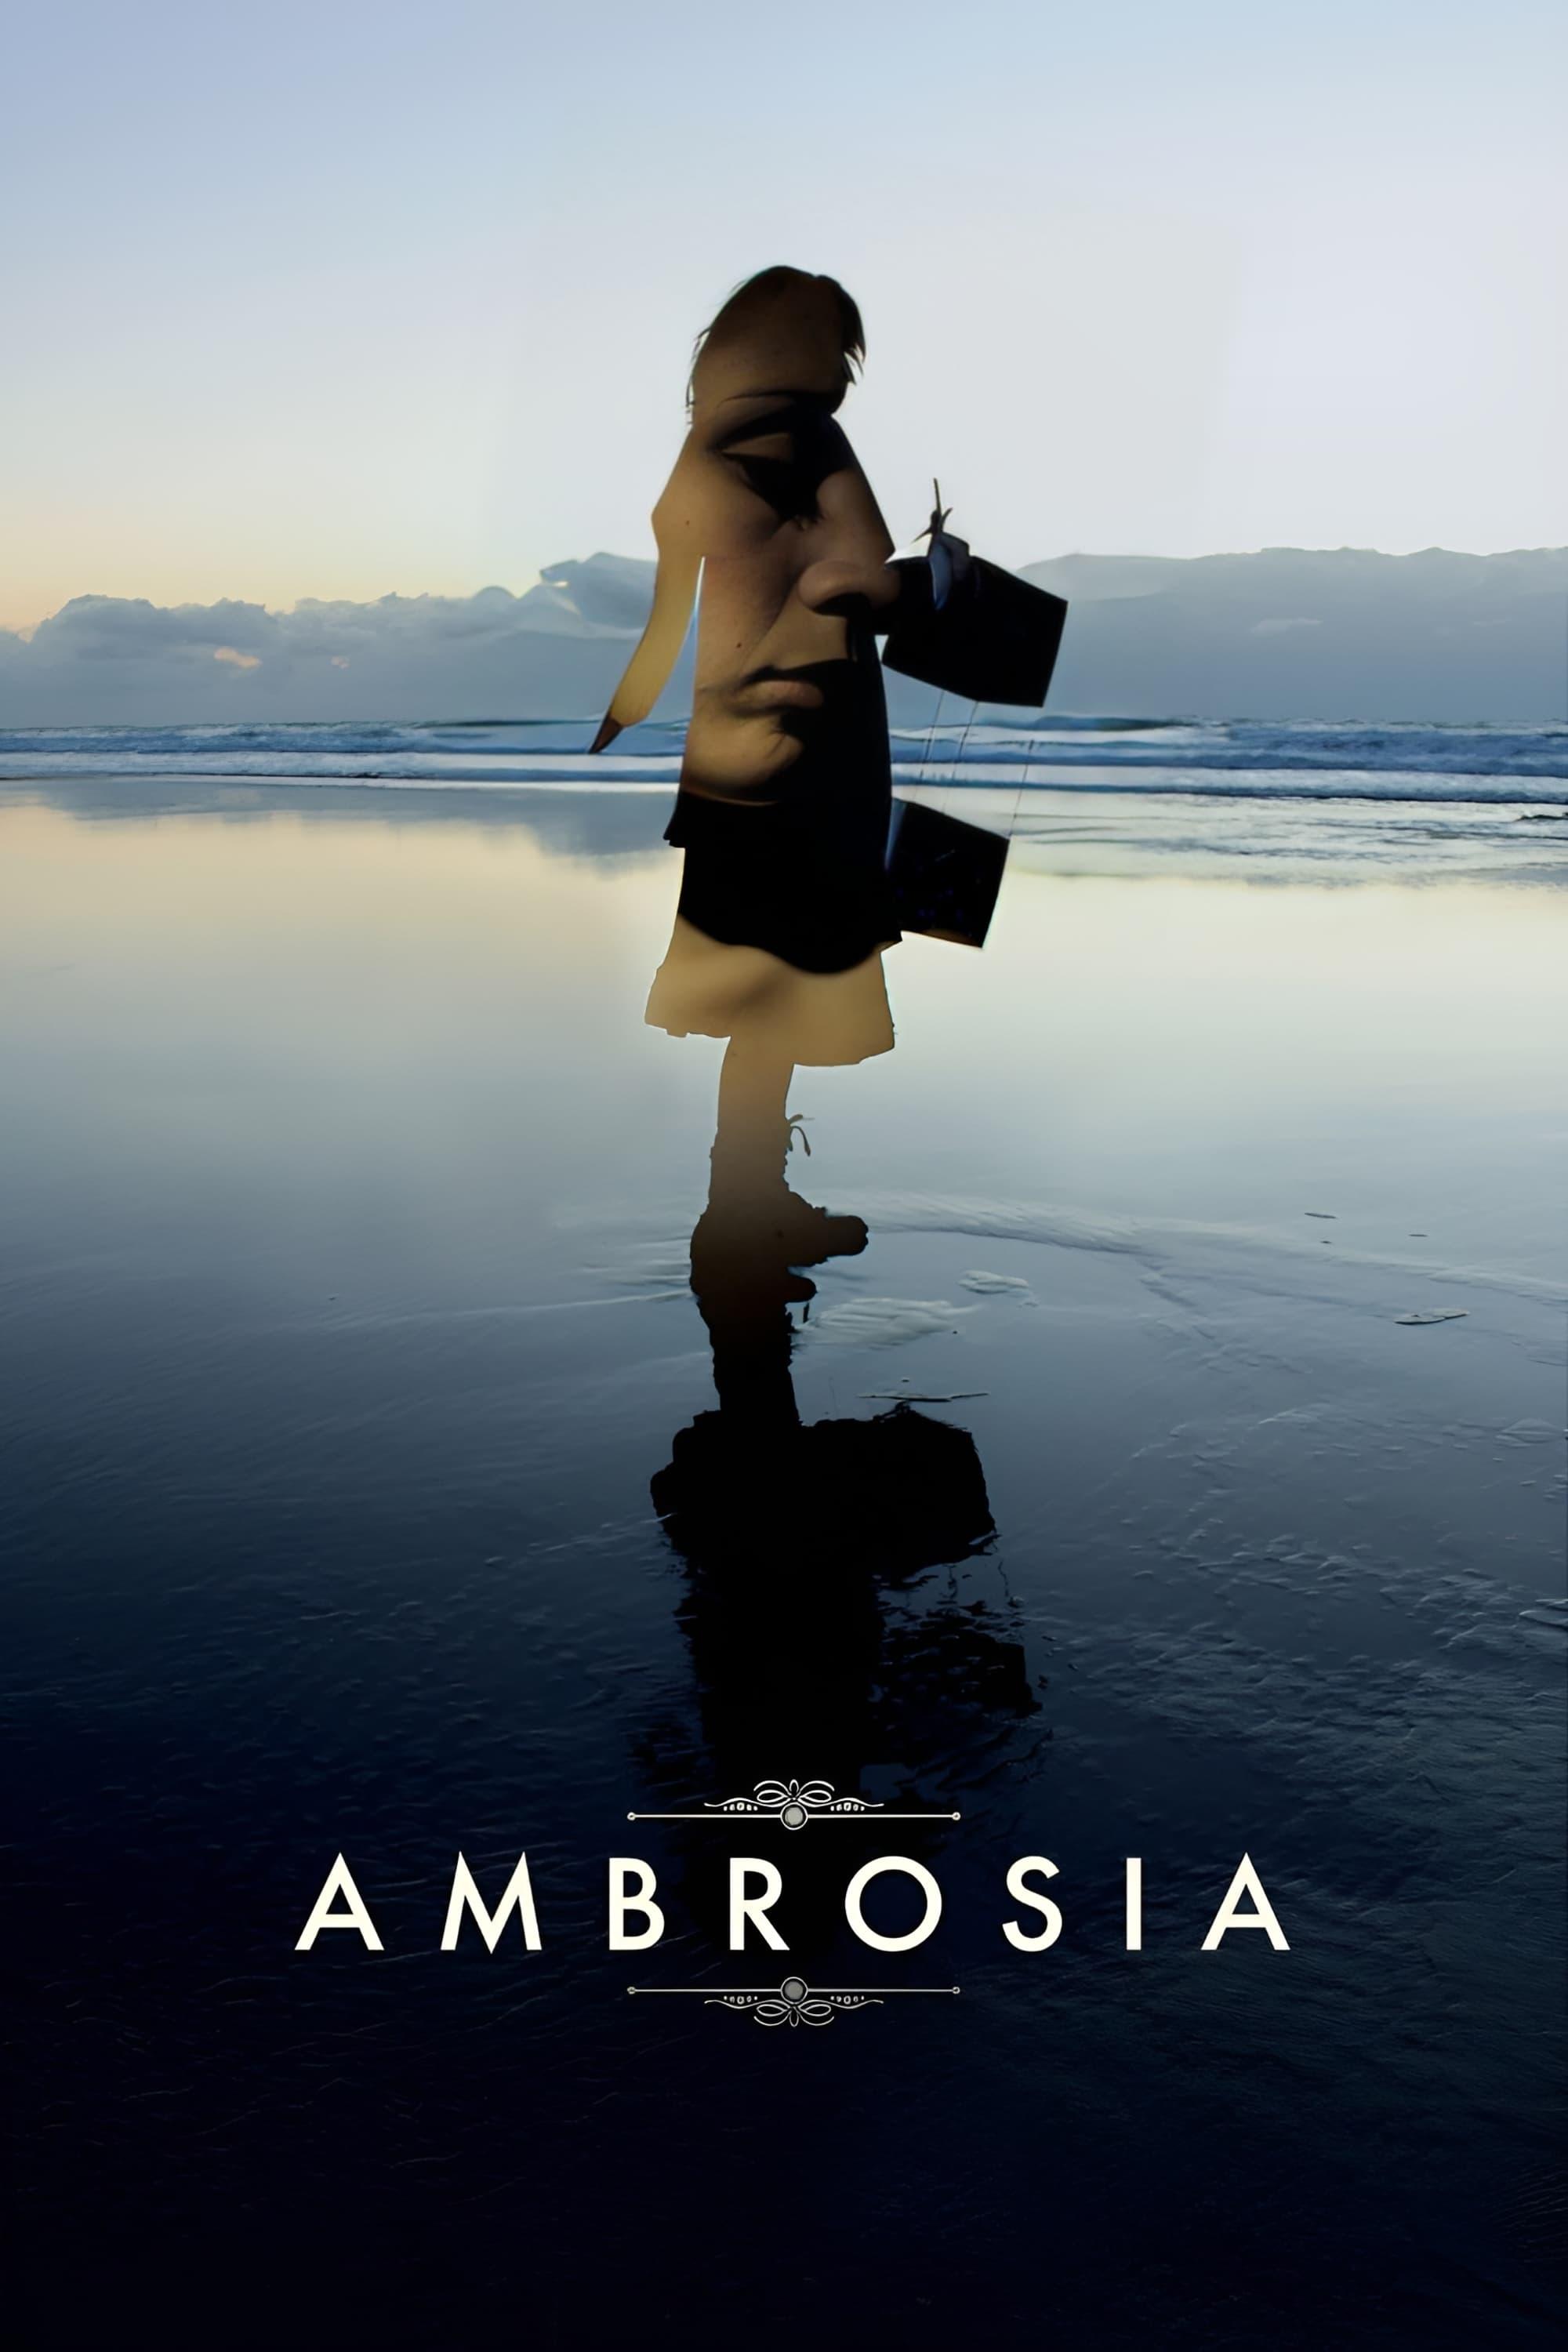 Ambrosia poster